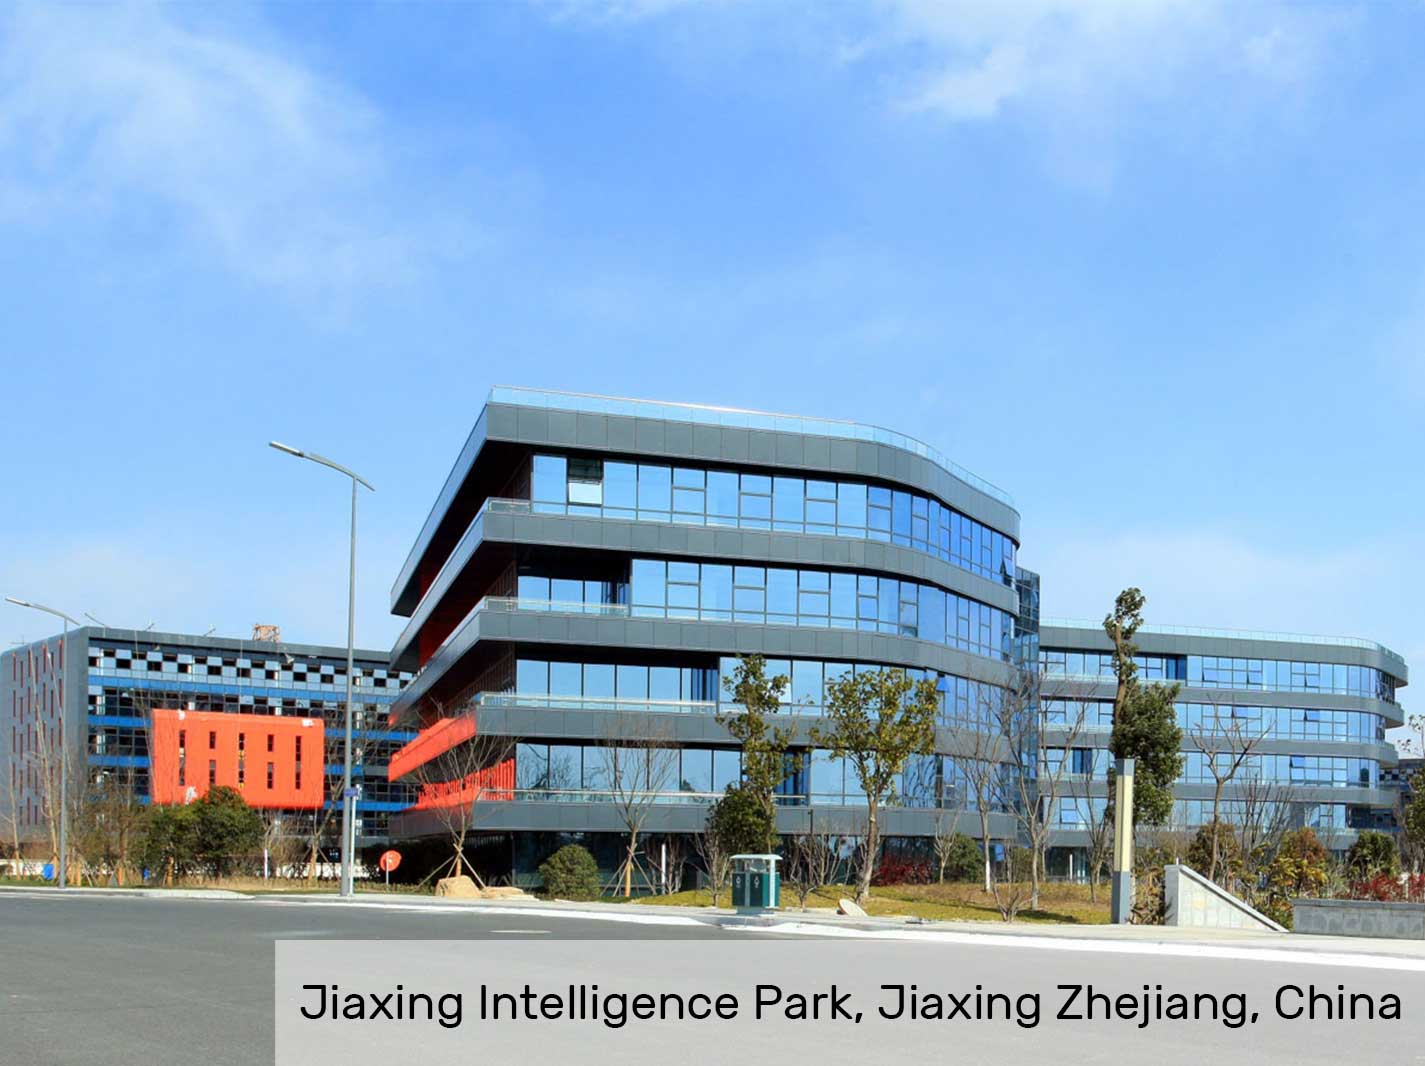 Jiaxing Intelligence Park, Jiaxing Zhejiang, China